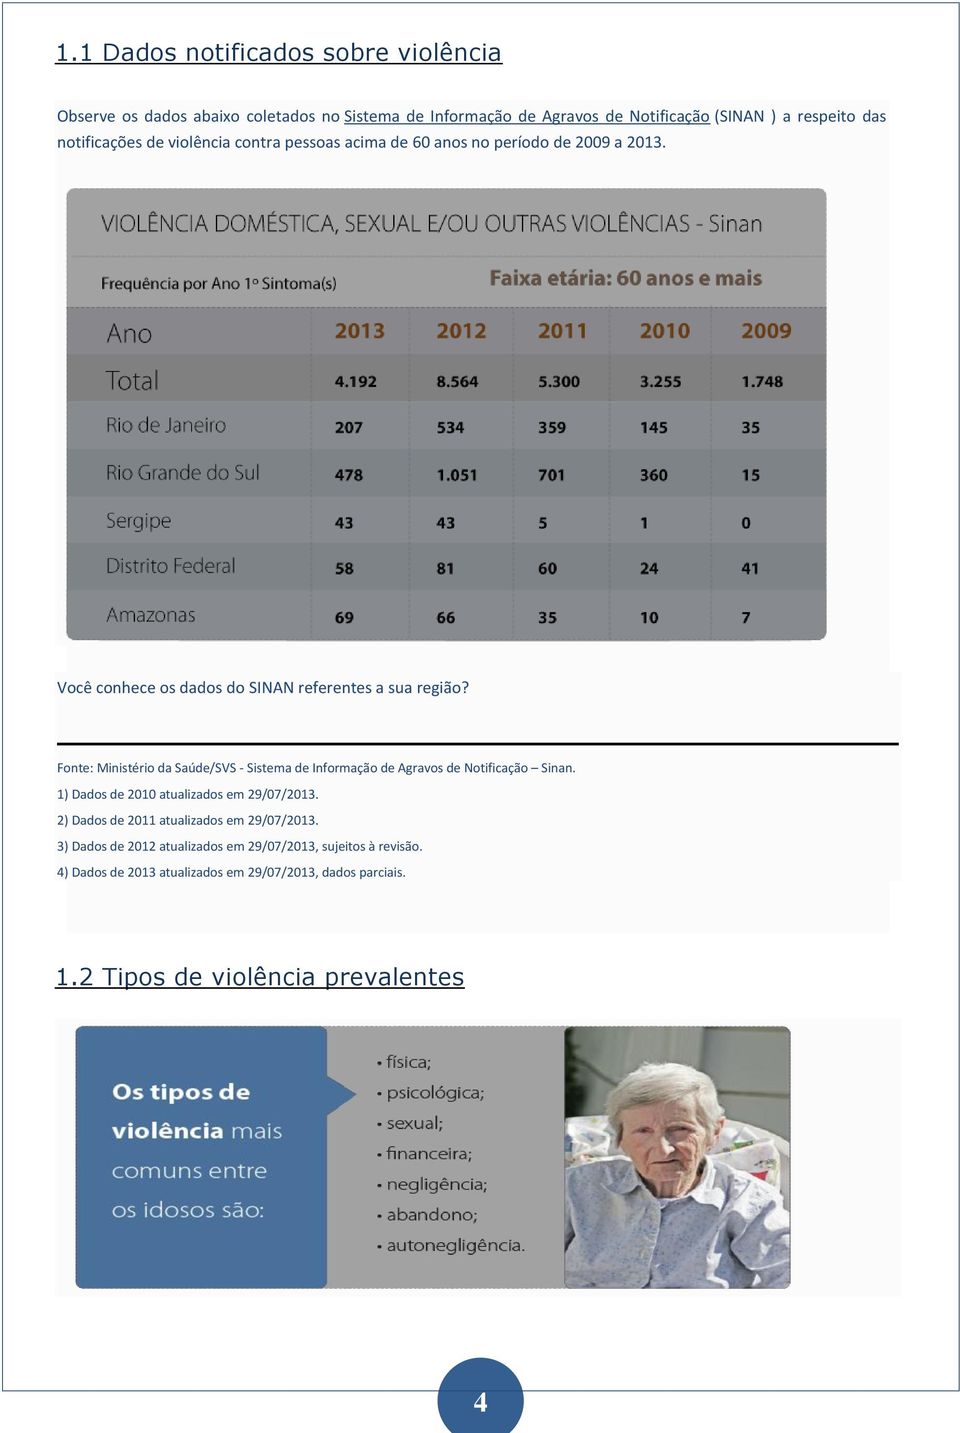 Fonte: Ministério da Saúde/SVS - Sistema de Informação de Agravos de Notificação Sinan. 1) Dados de 2010 atualizados em 29/07/2013.